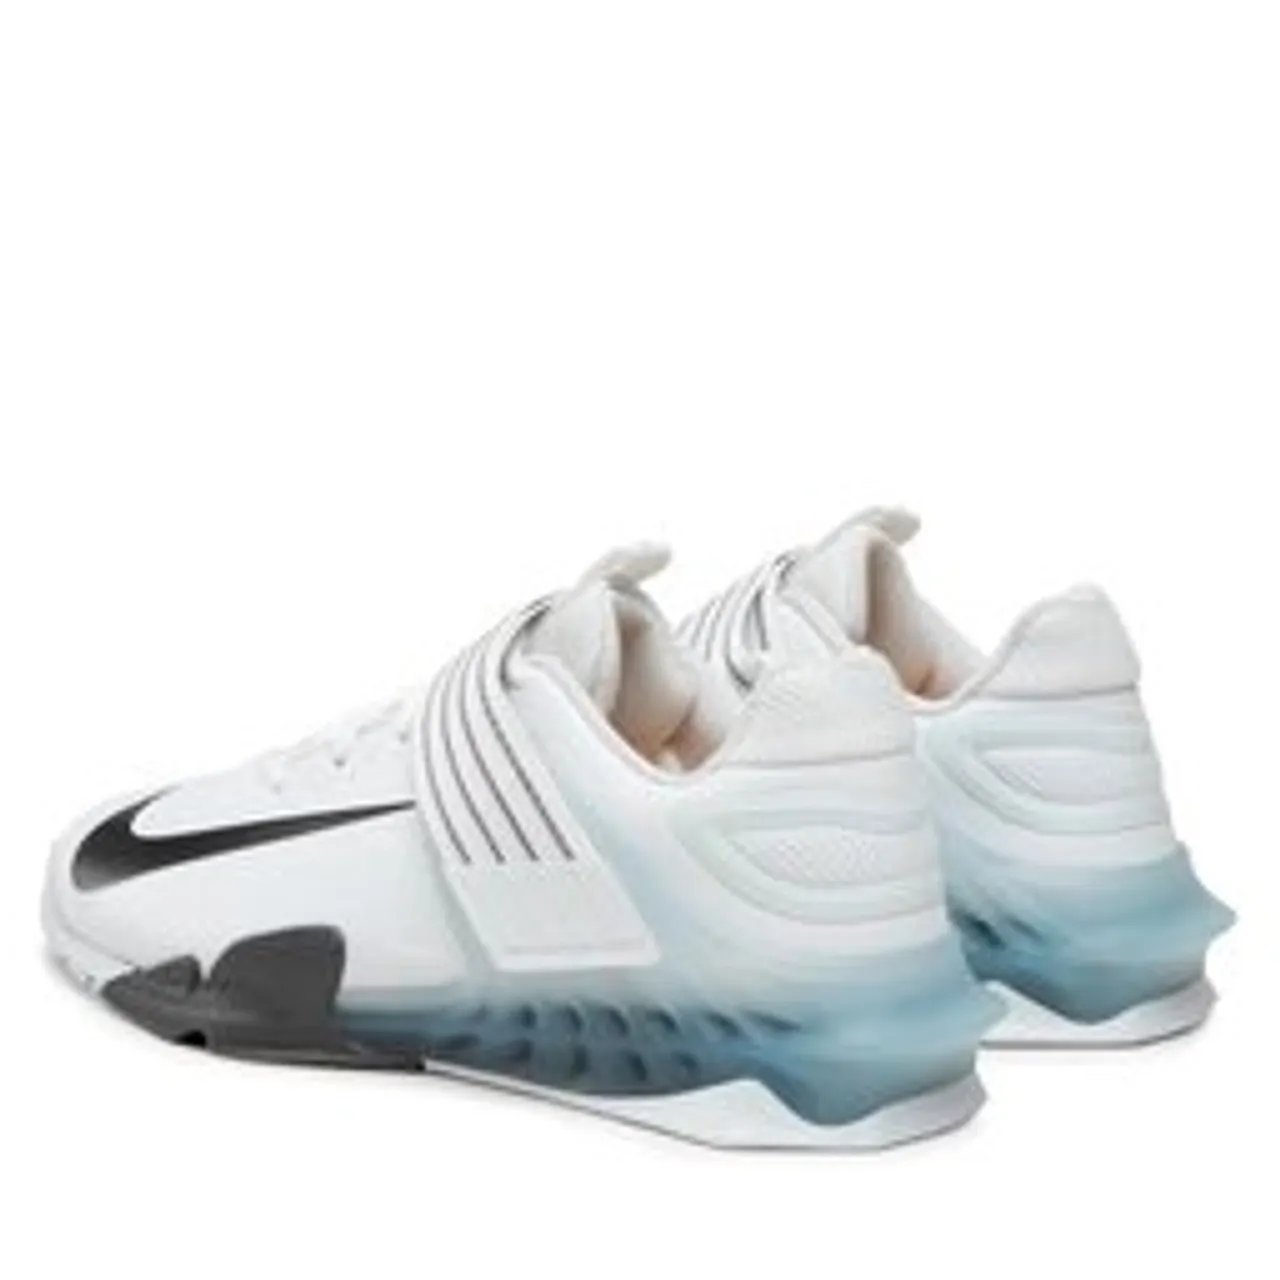 Schuhe Nike Savaleos CV5708 100 White/Black/Iron Grey